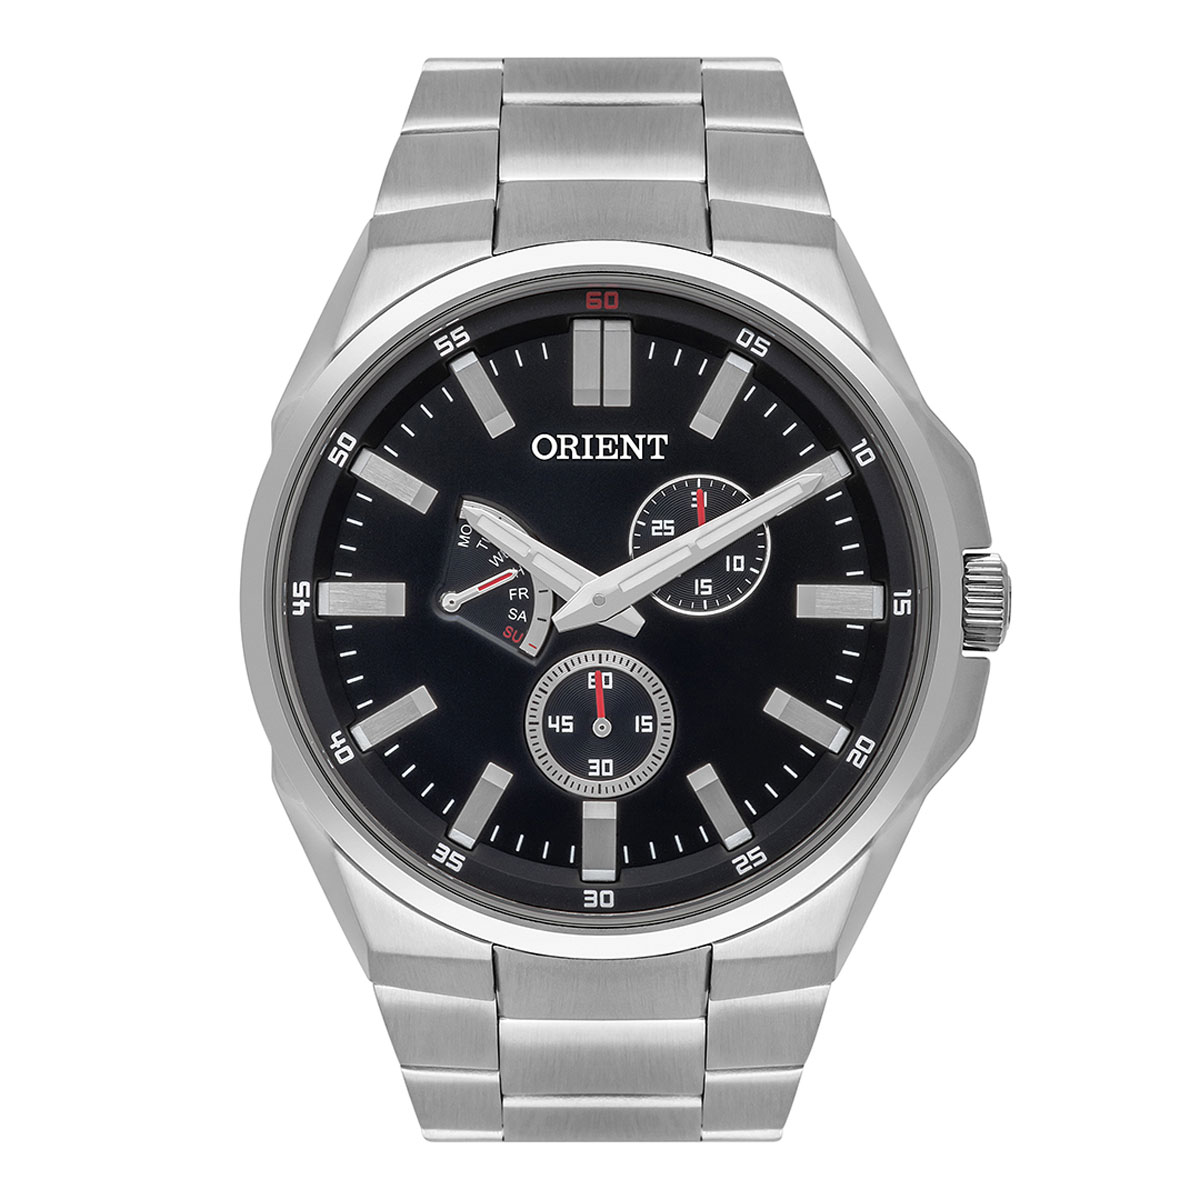 Relógio Masculino Orient Eternal - Multifunção - Prata - MBSSM087P1SX